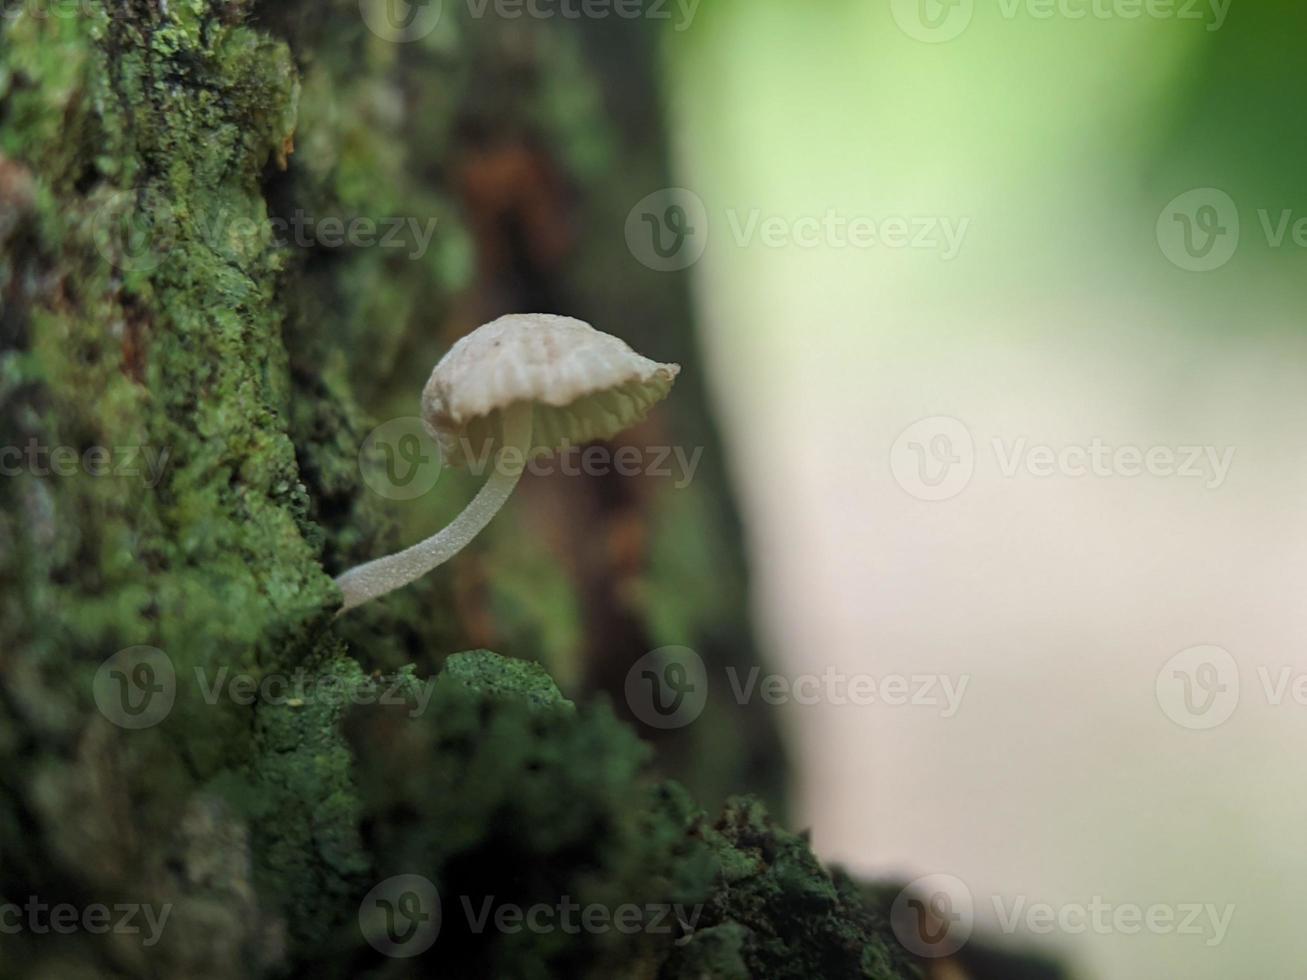 vue unique d'un champignon blanc lumineux poussant sur un tronc d'arbre photo